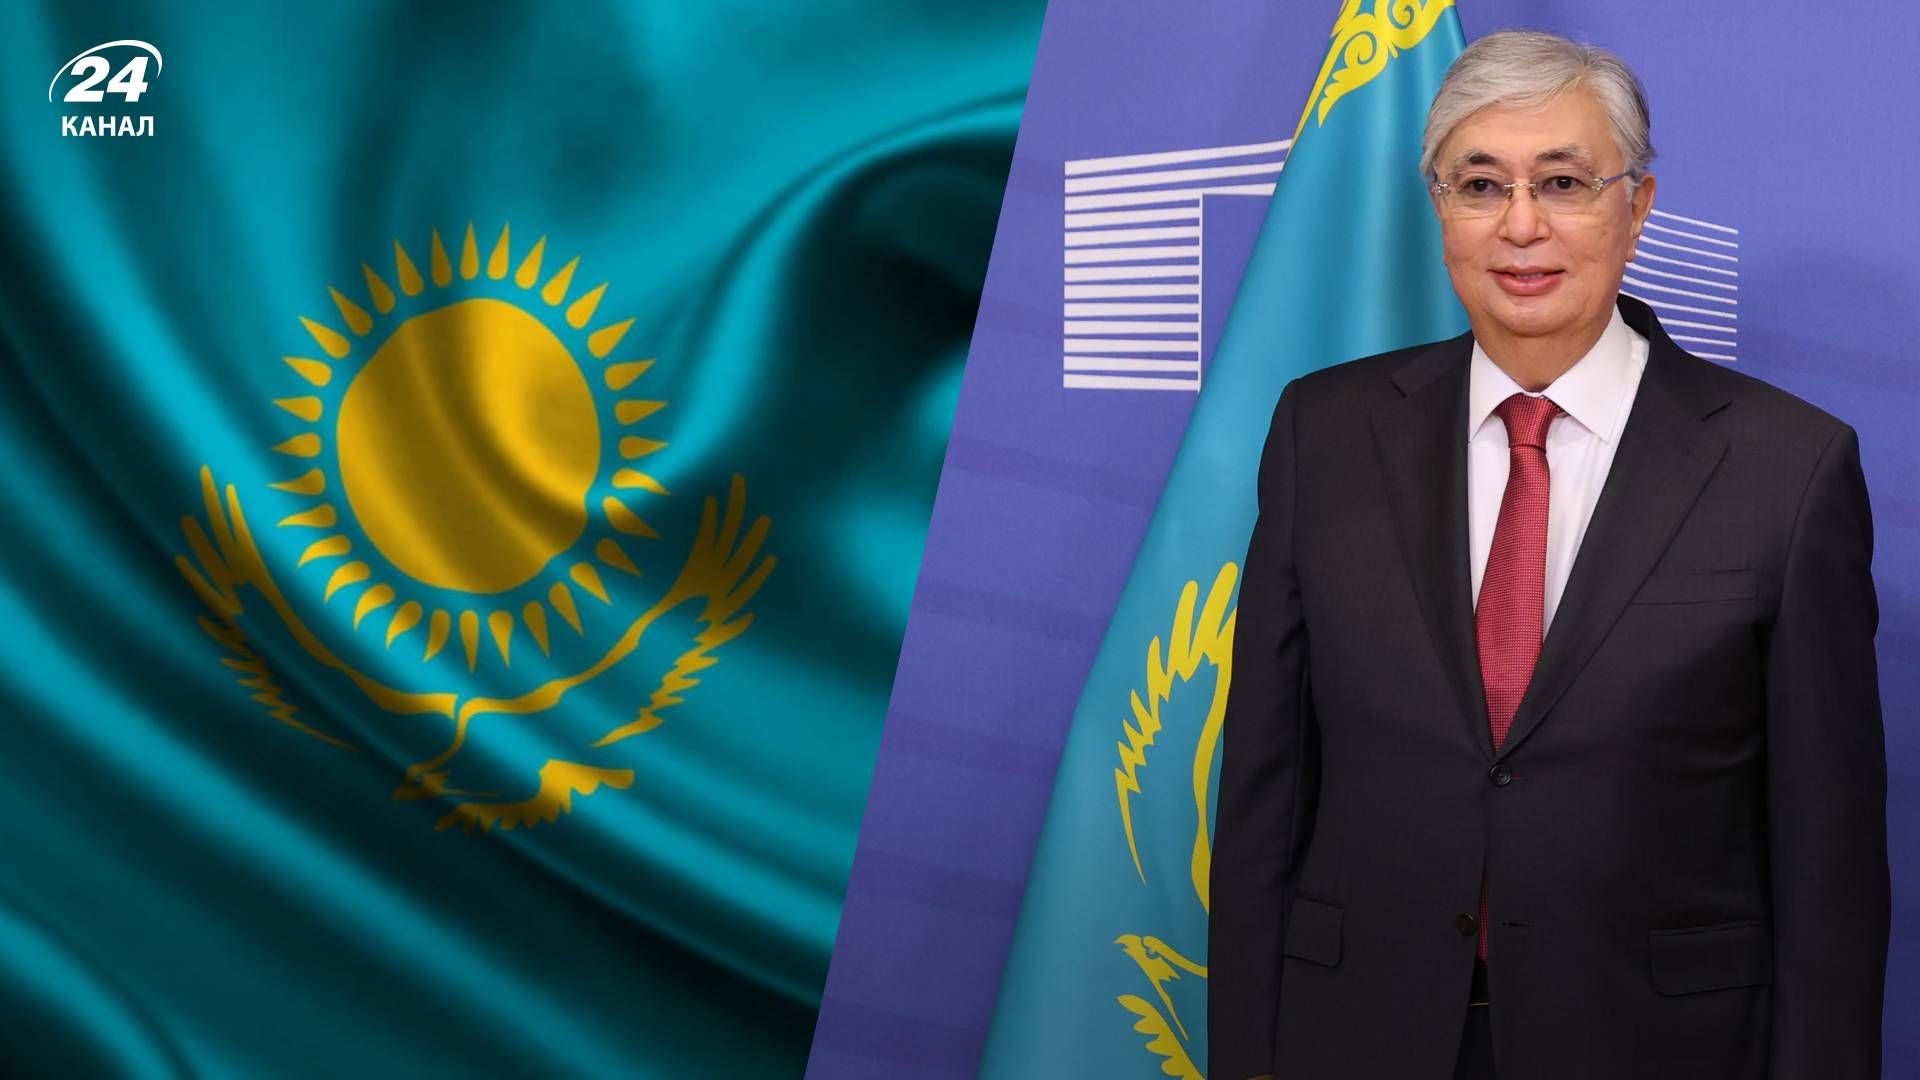 Токаєв не буде противником Росії - Якої політики буде дотримуватися президент Казахстану